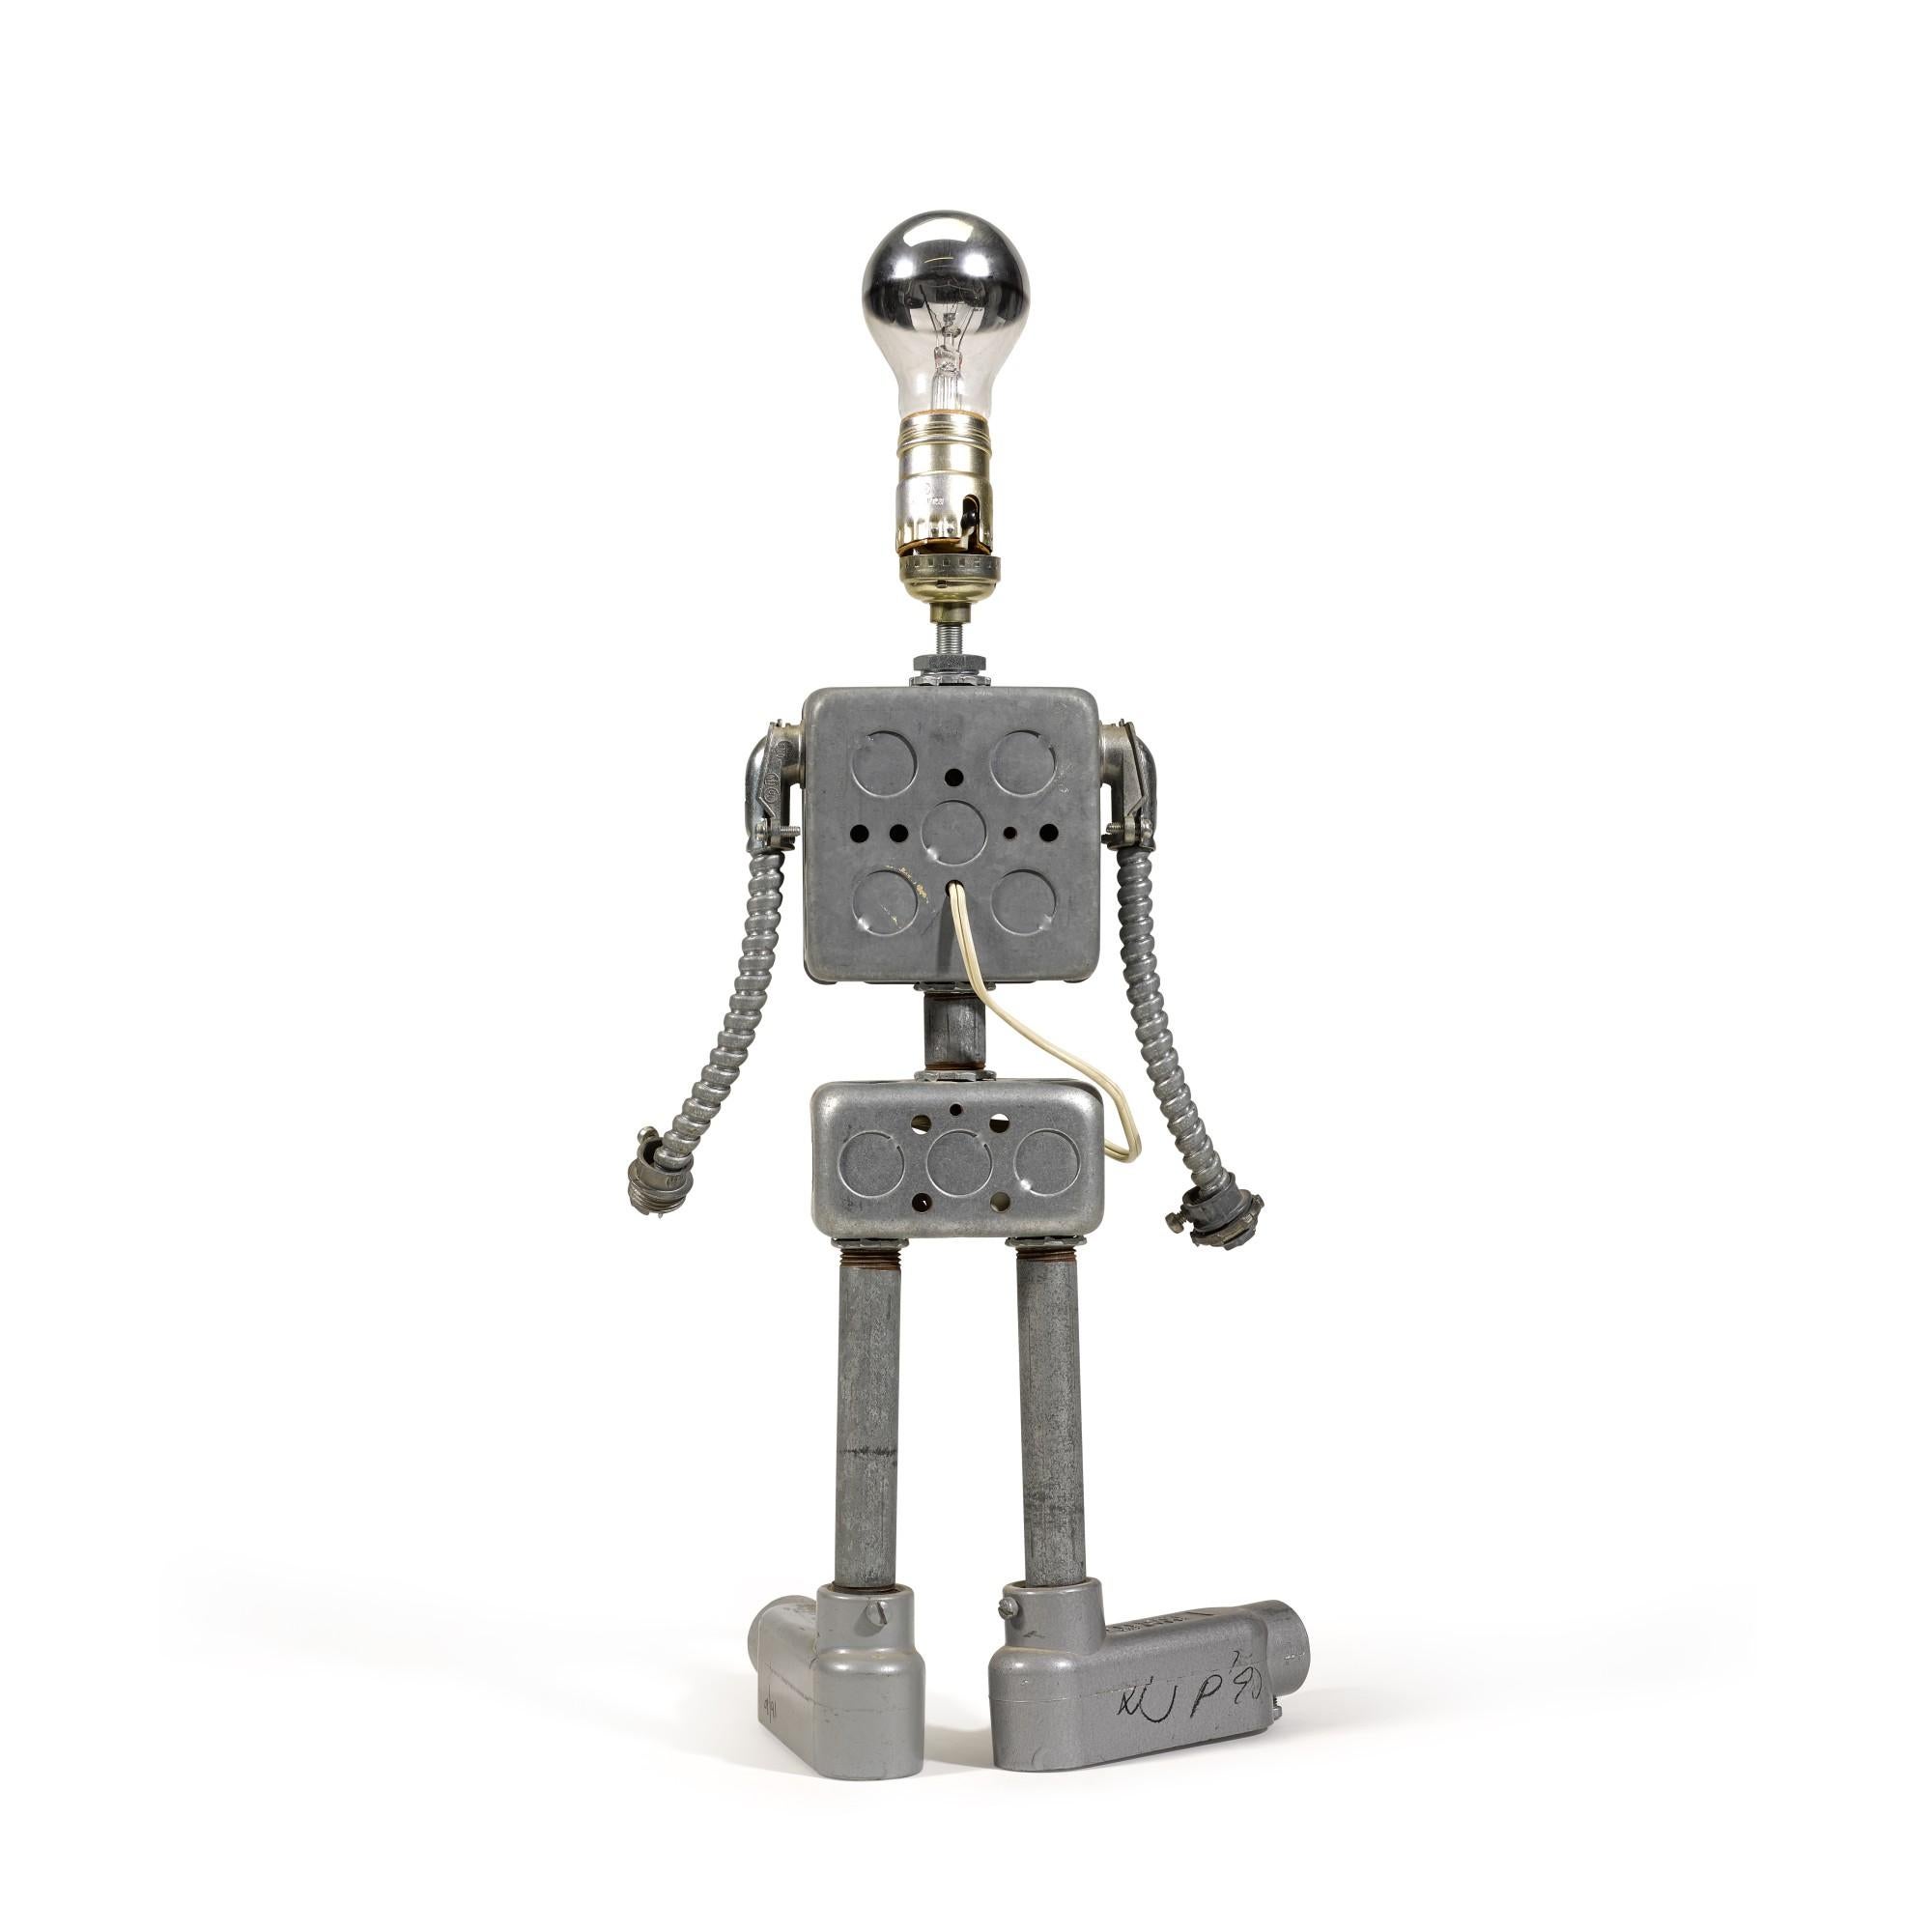 Robot - Sculpture by Nam June Paik